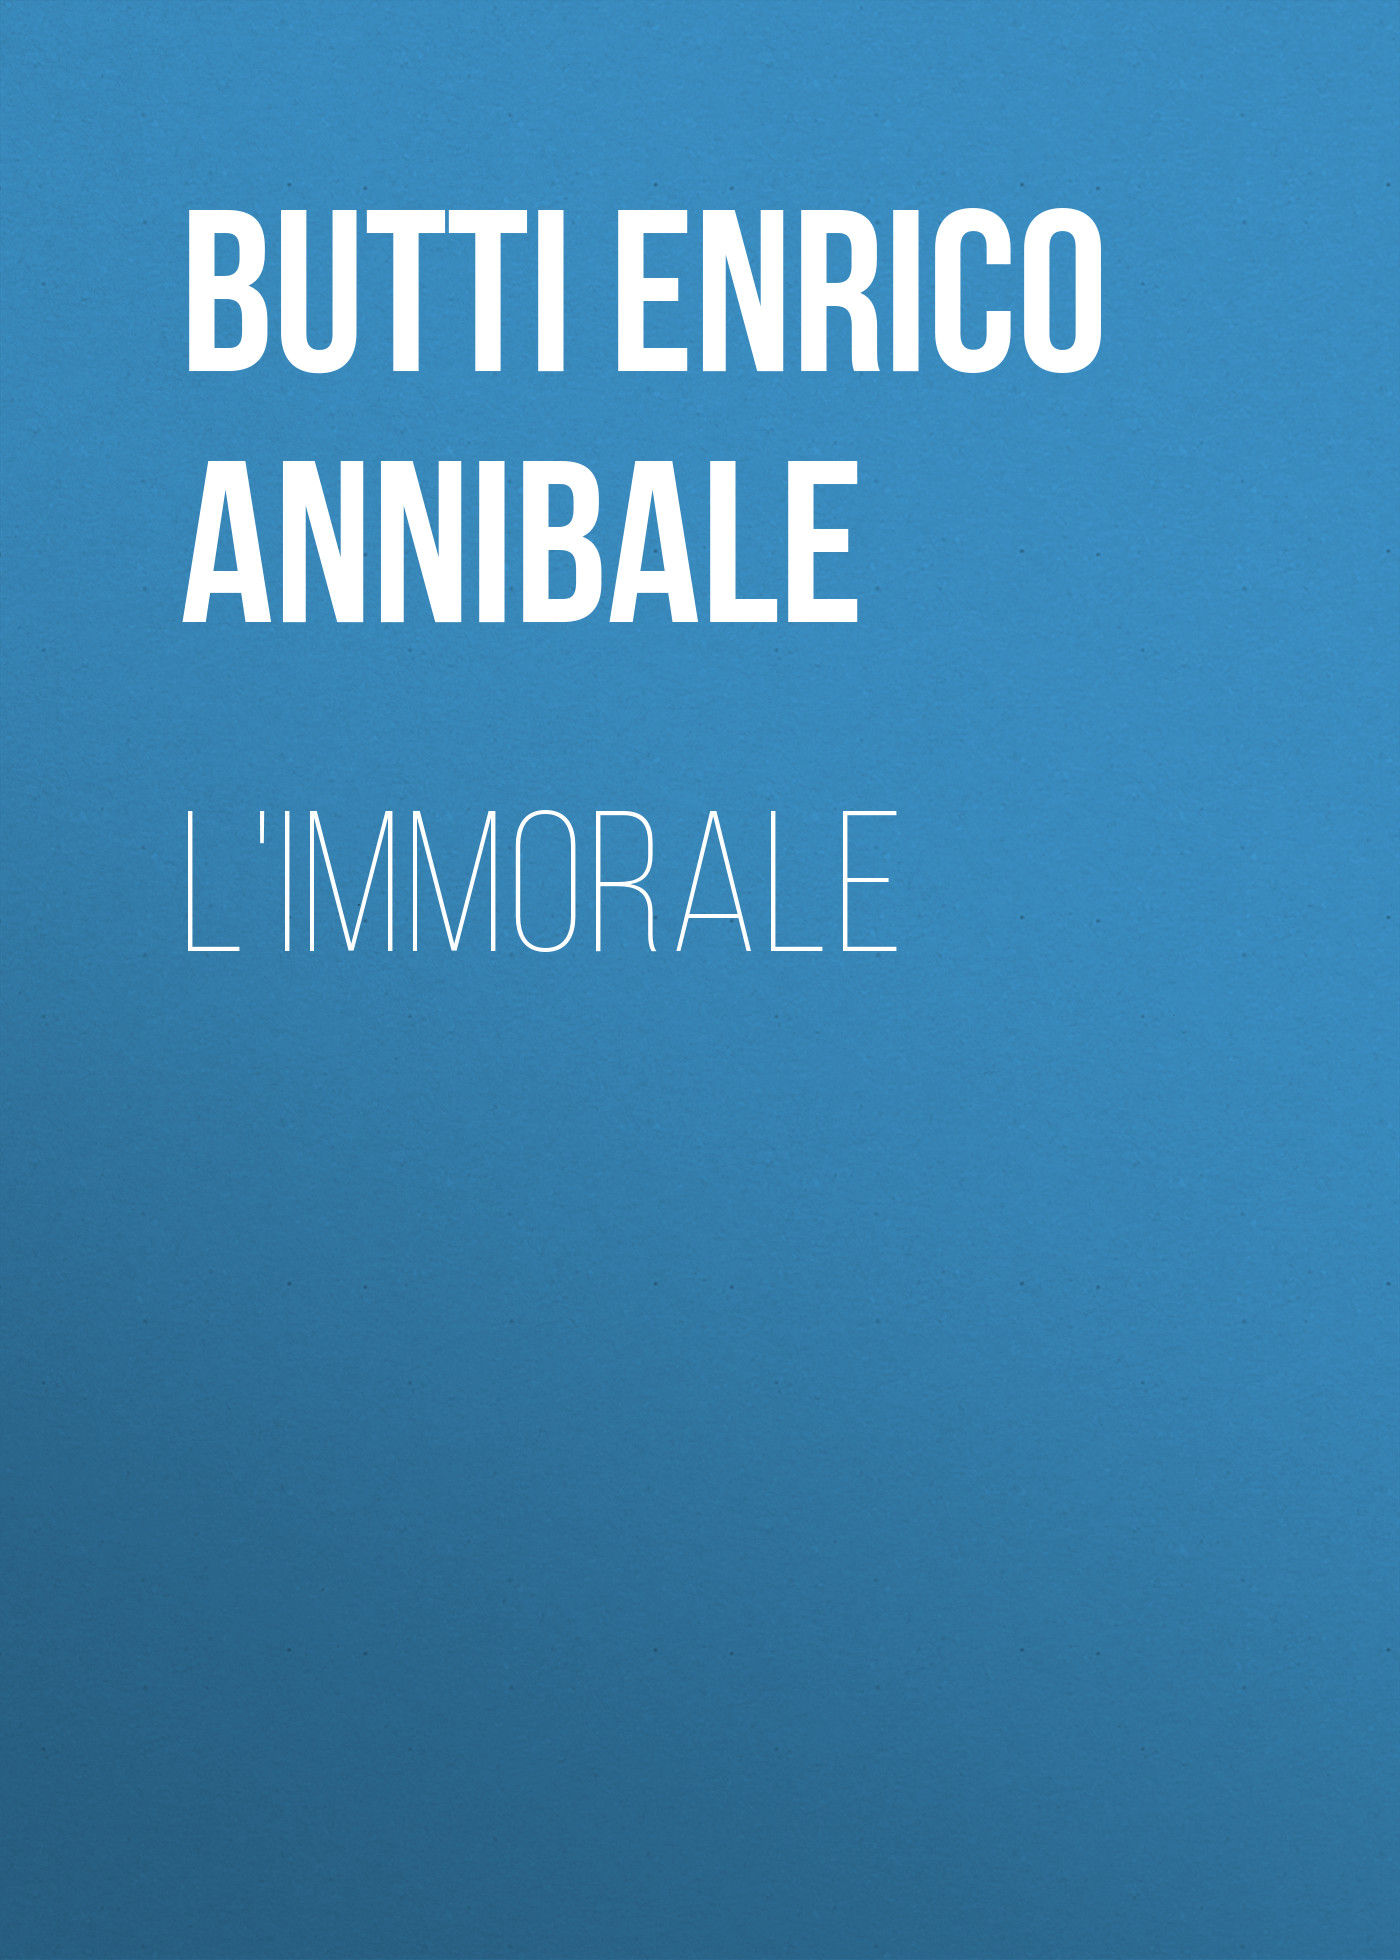 Книга L'Immorale из серии , созданная Enrico Butti, может относится к жанру Зарубежная старинная литература, Зарубежная классика. Стоимость электронной книги L'Immorale с идентификатором 24180732 составляет 0.90 руб.